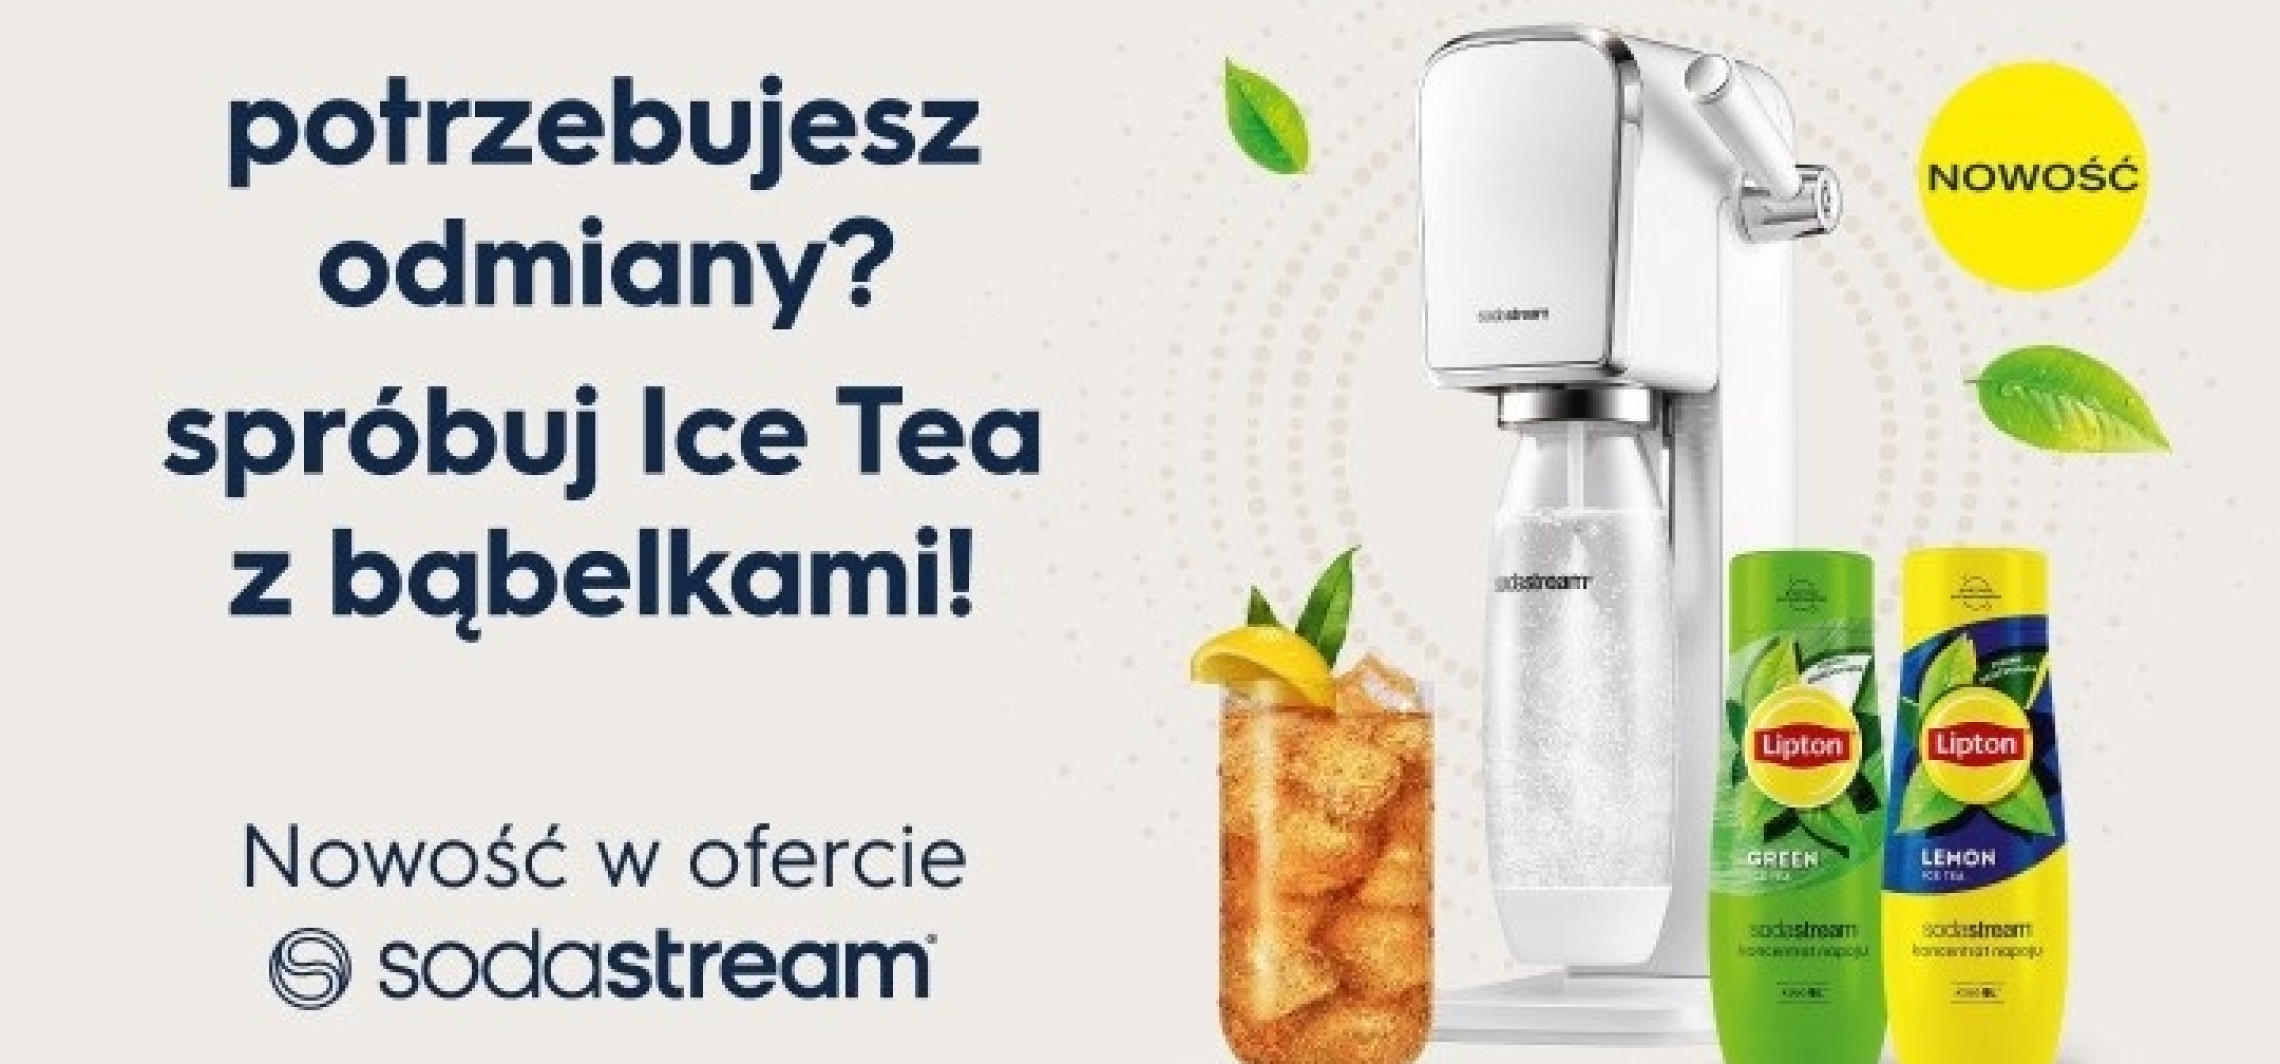 Kraj - SodaStream proponuje nowy sposób na orzeźwienie - Lipton Ice Tea z bąbelkami